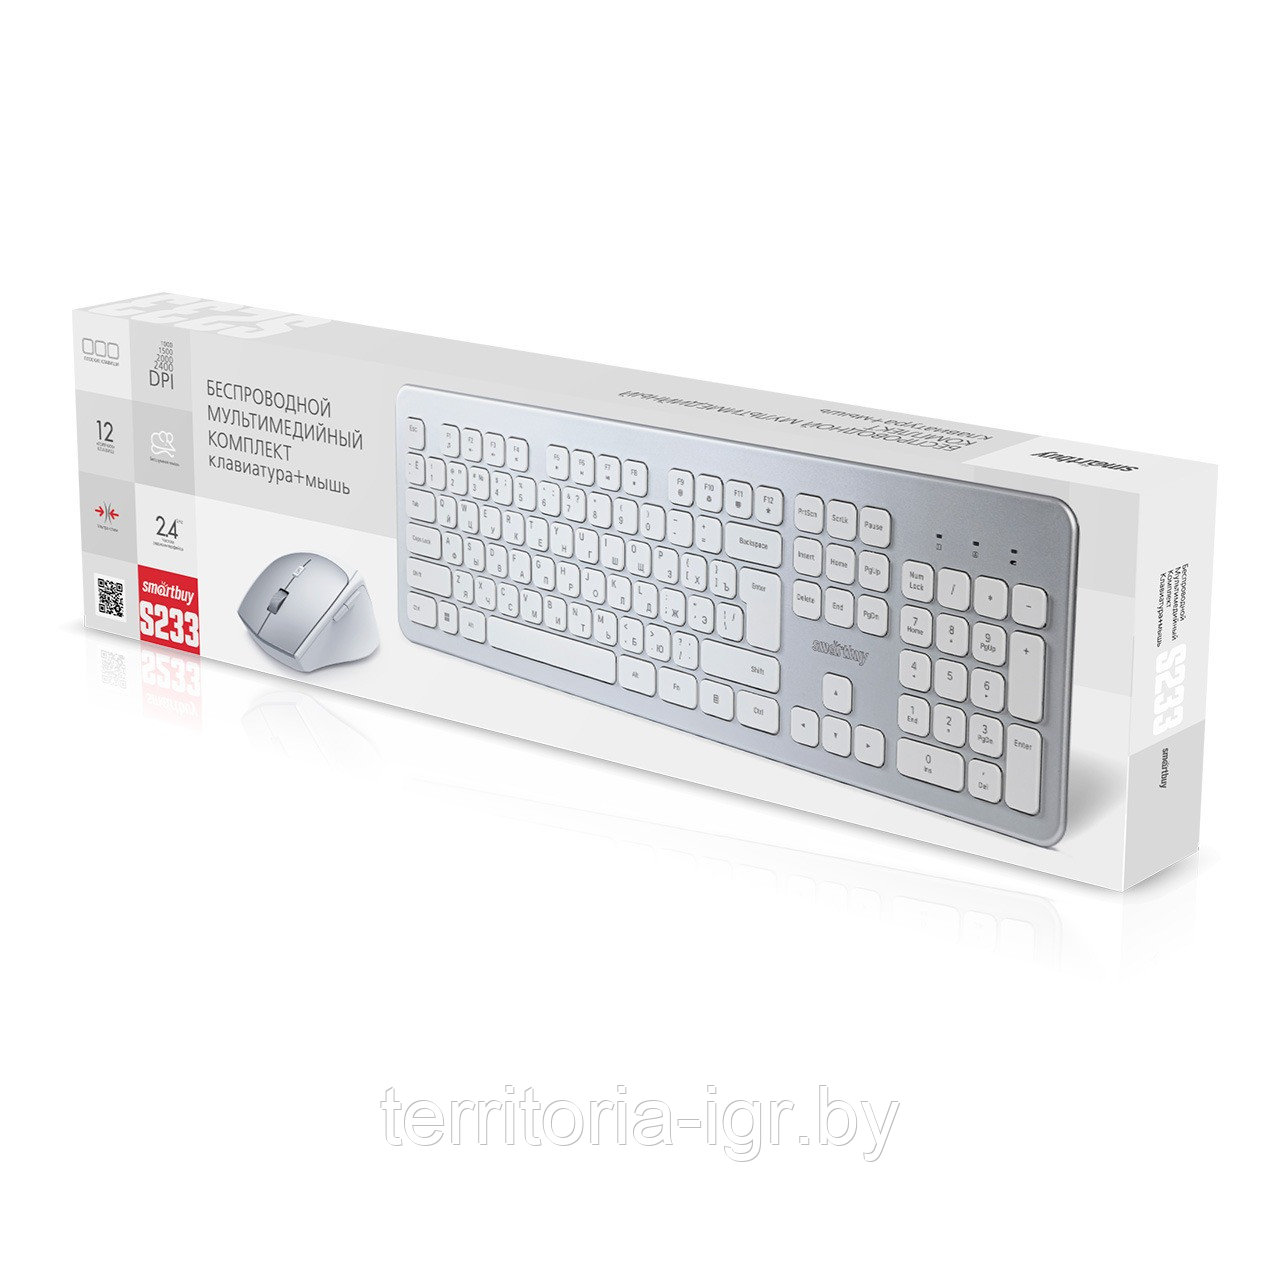 Беспроводной набор клавиатура + мышь SBC-233616AG-SW серебристо-белый Smartbuy